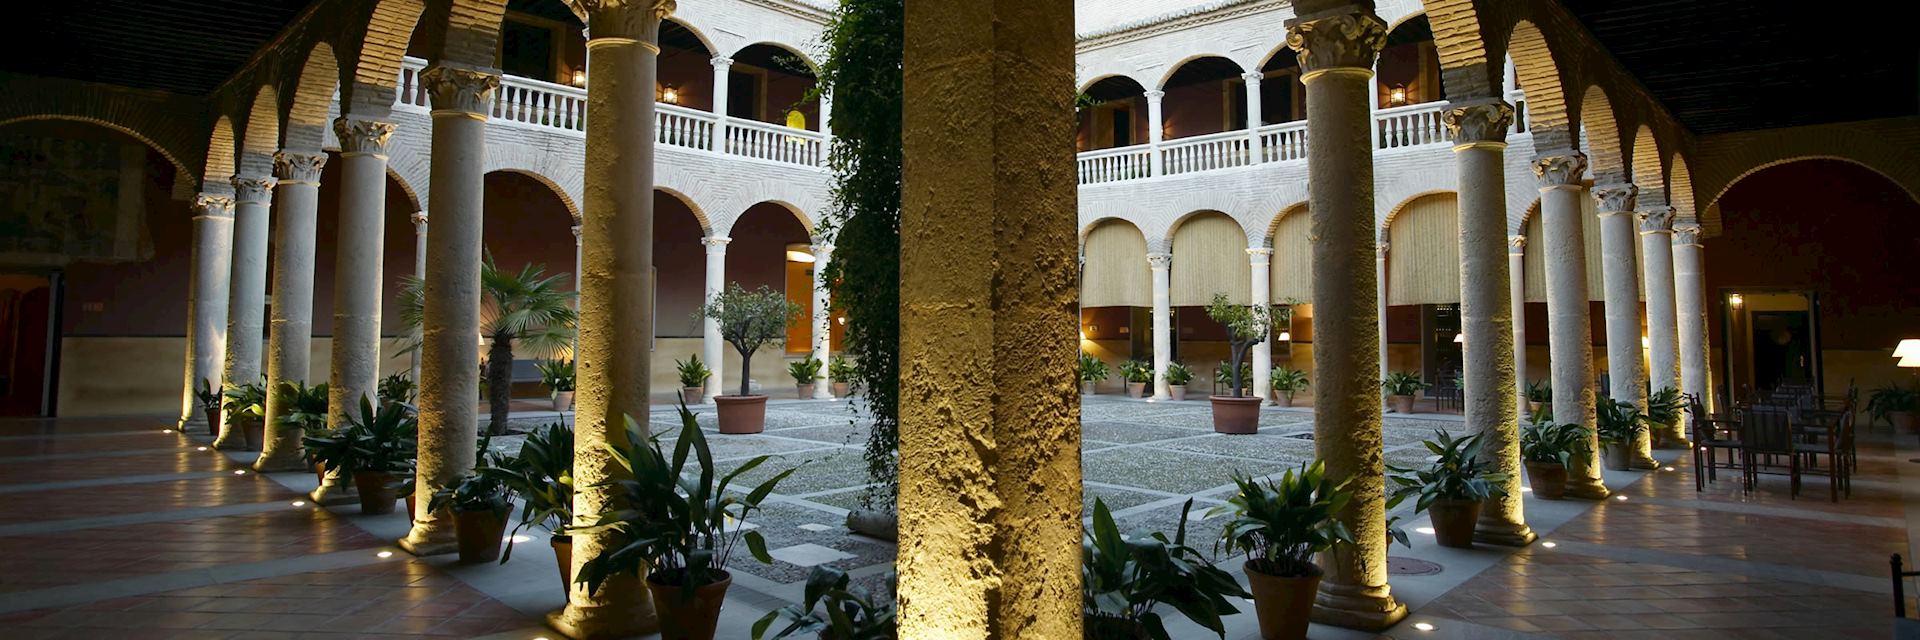 Hotel Palacio de Santa Paula